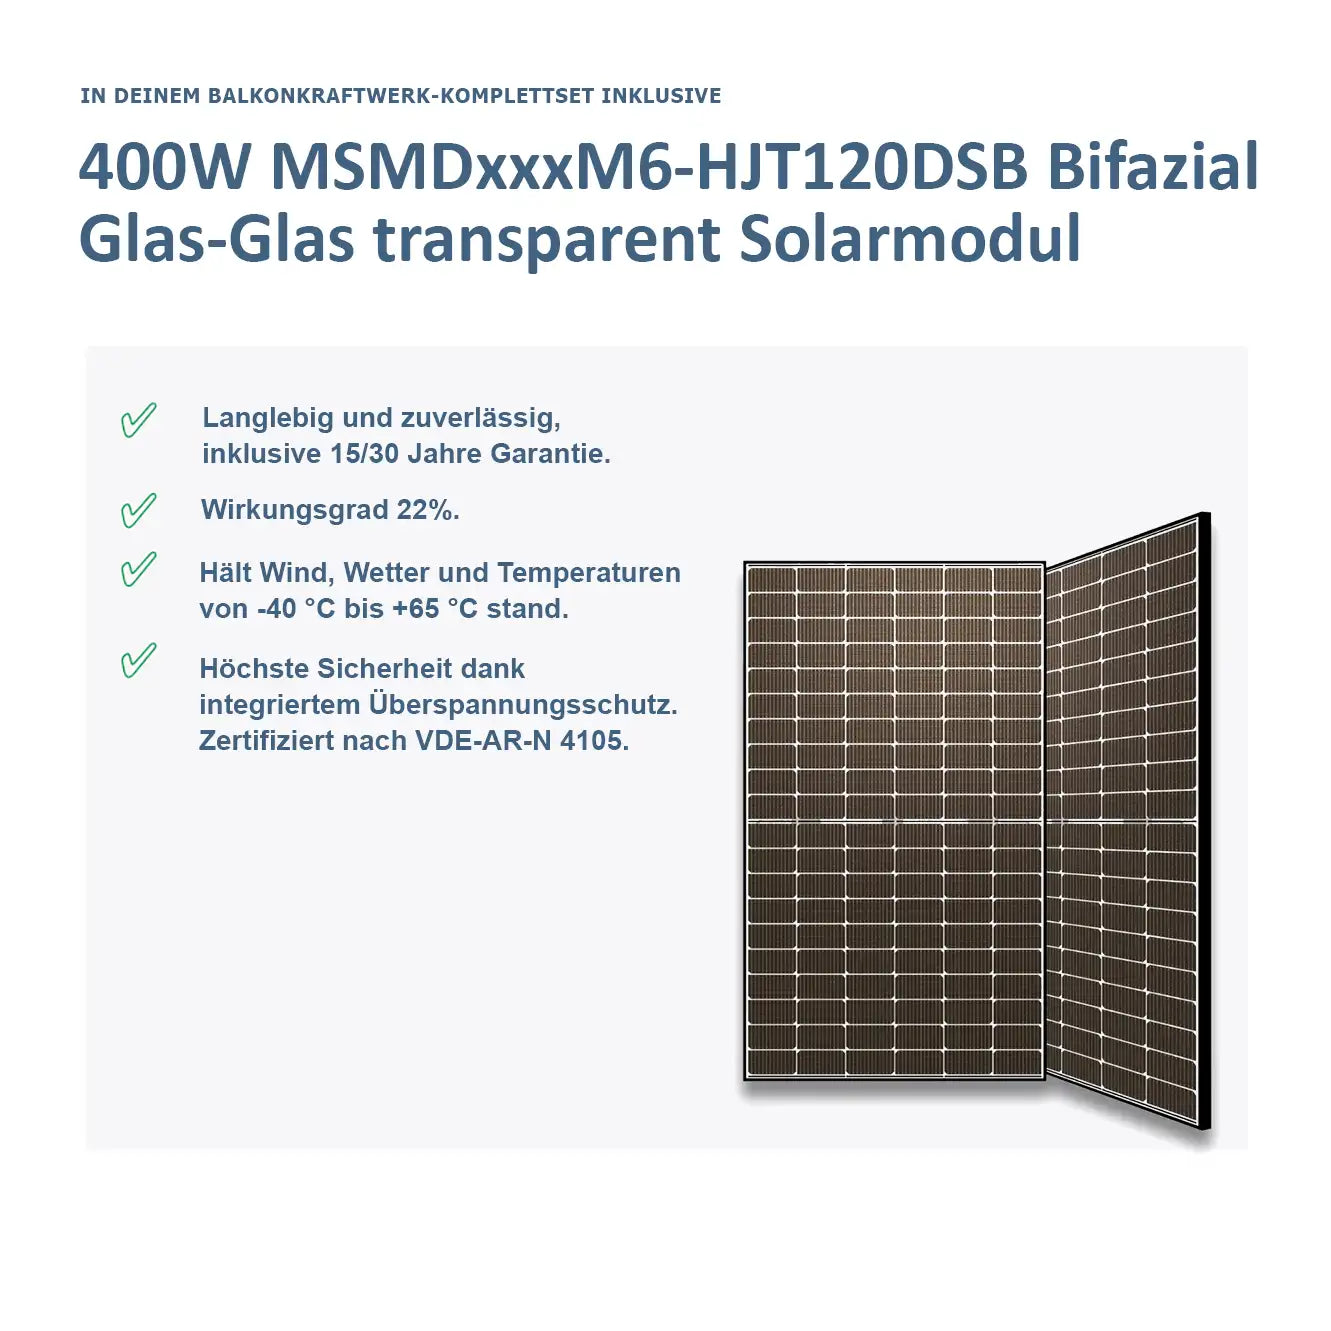 MiniPower Balkonkraftwerk 800W/800W Bifizial Glas-Glas 03